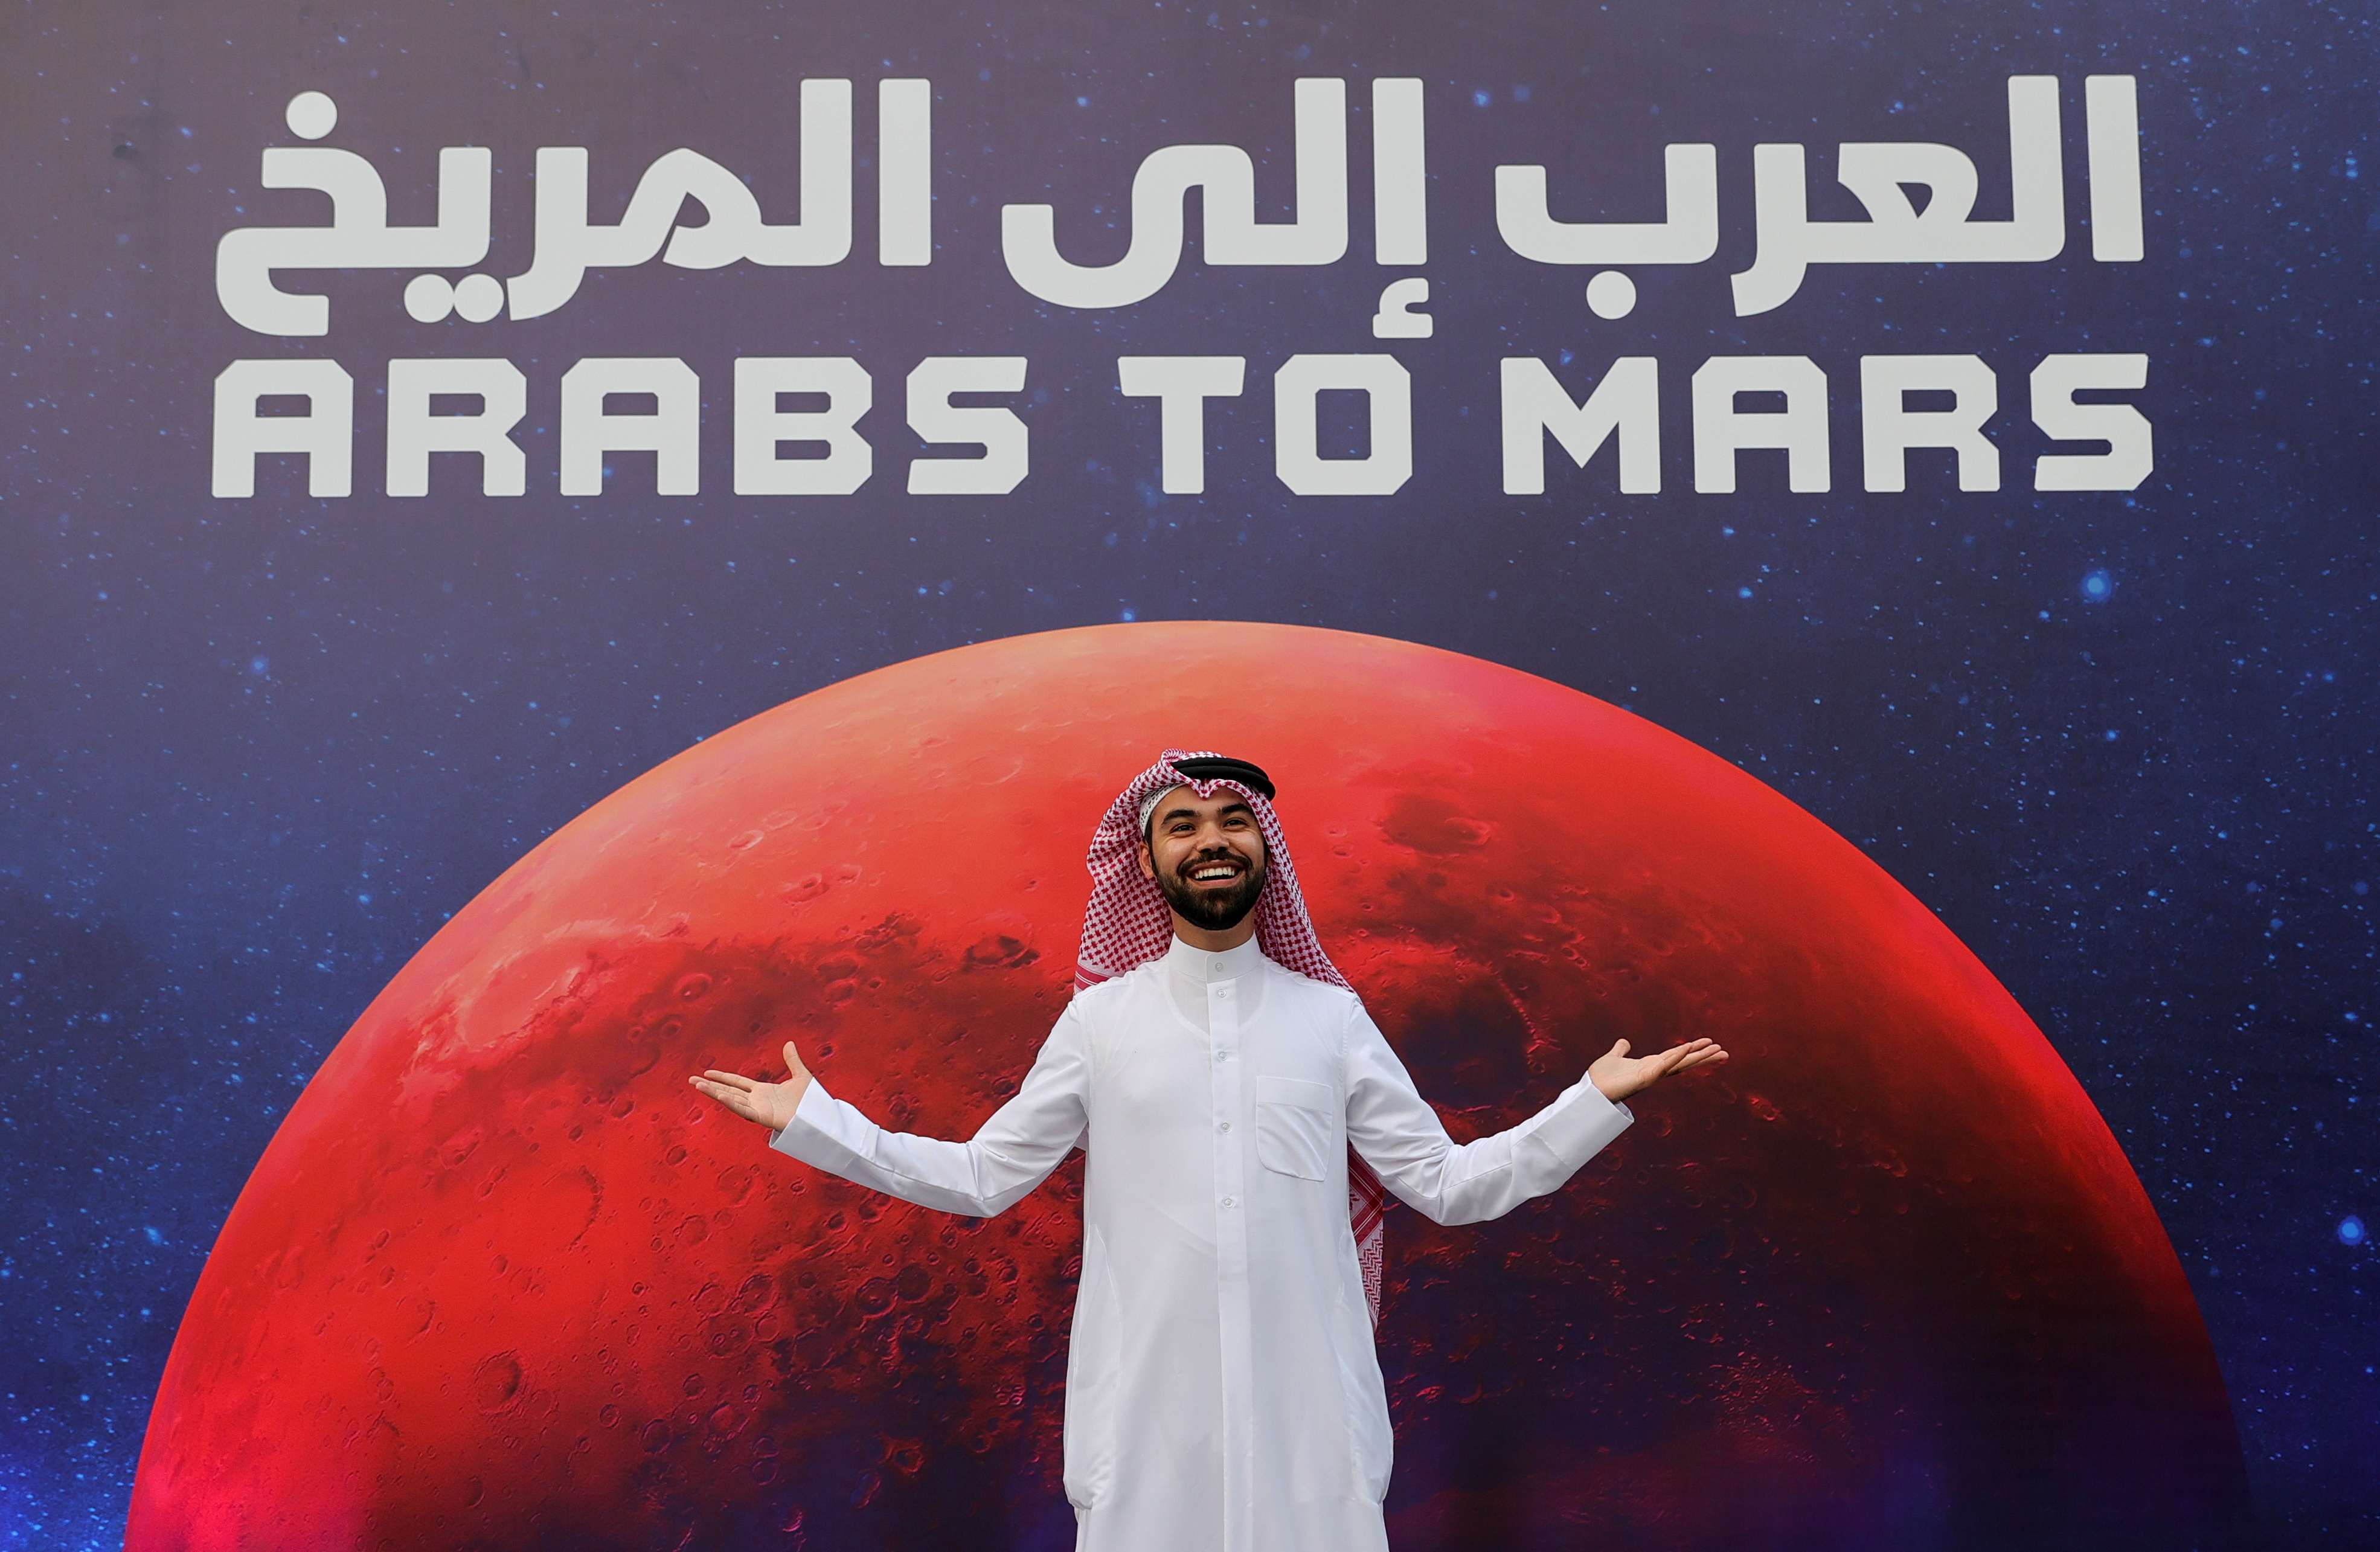 El mundo árabe está orgulloso de su primera misión a Marte (REUTERS/Christopher Pike)